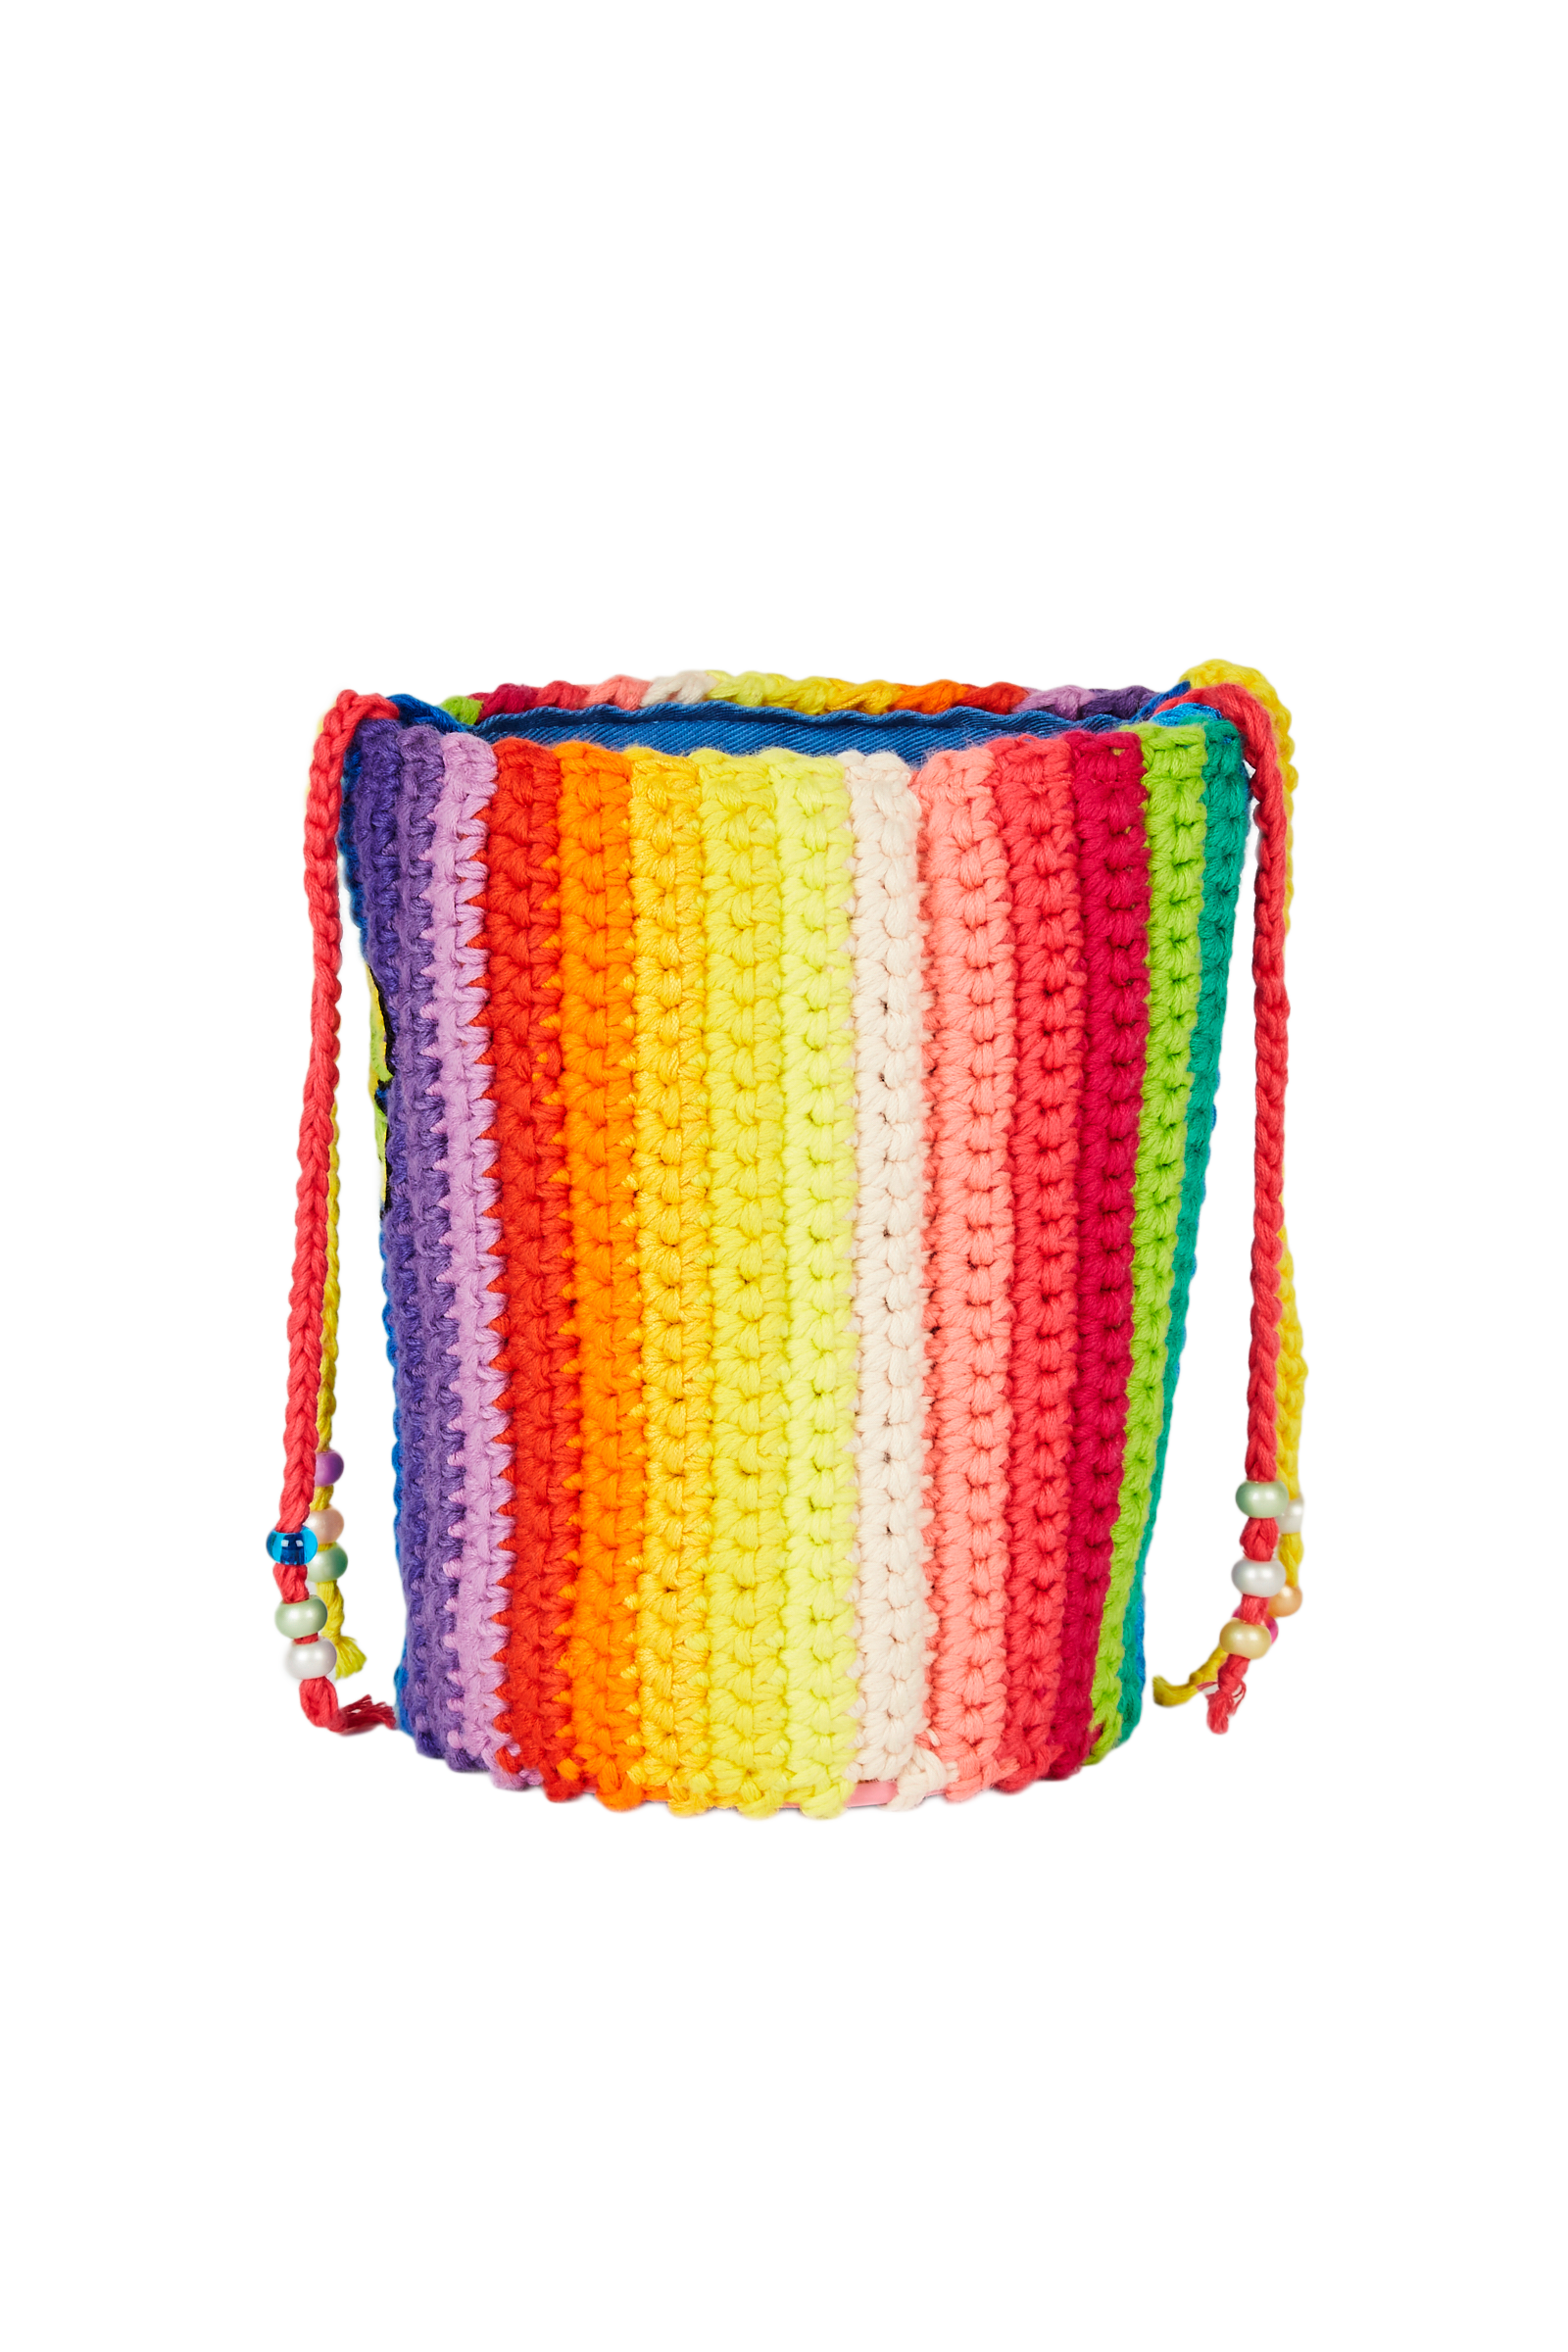 Dégradé Rainbow Crochet Bag 